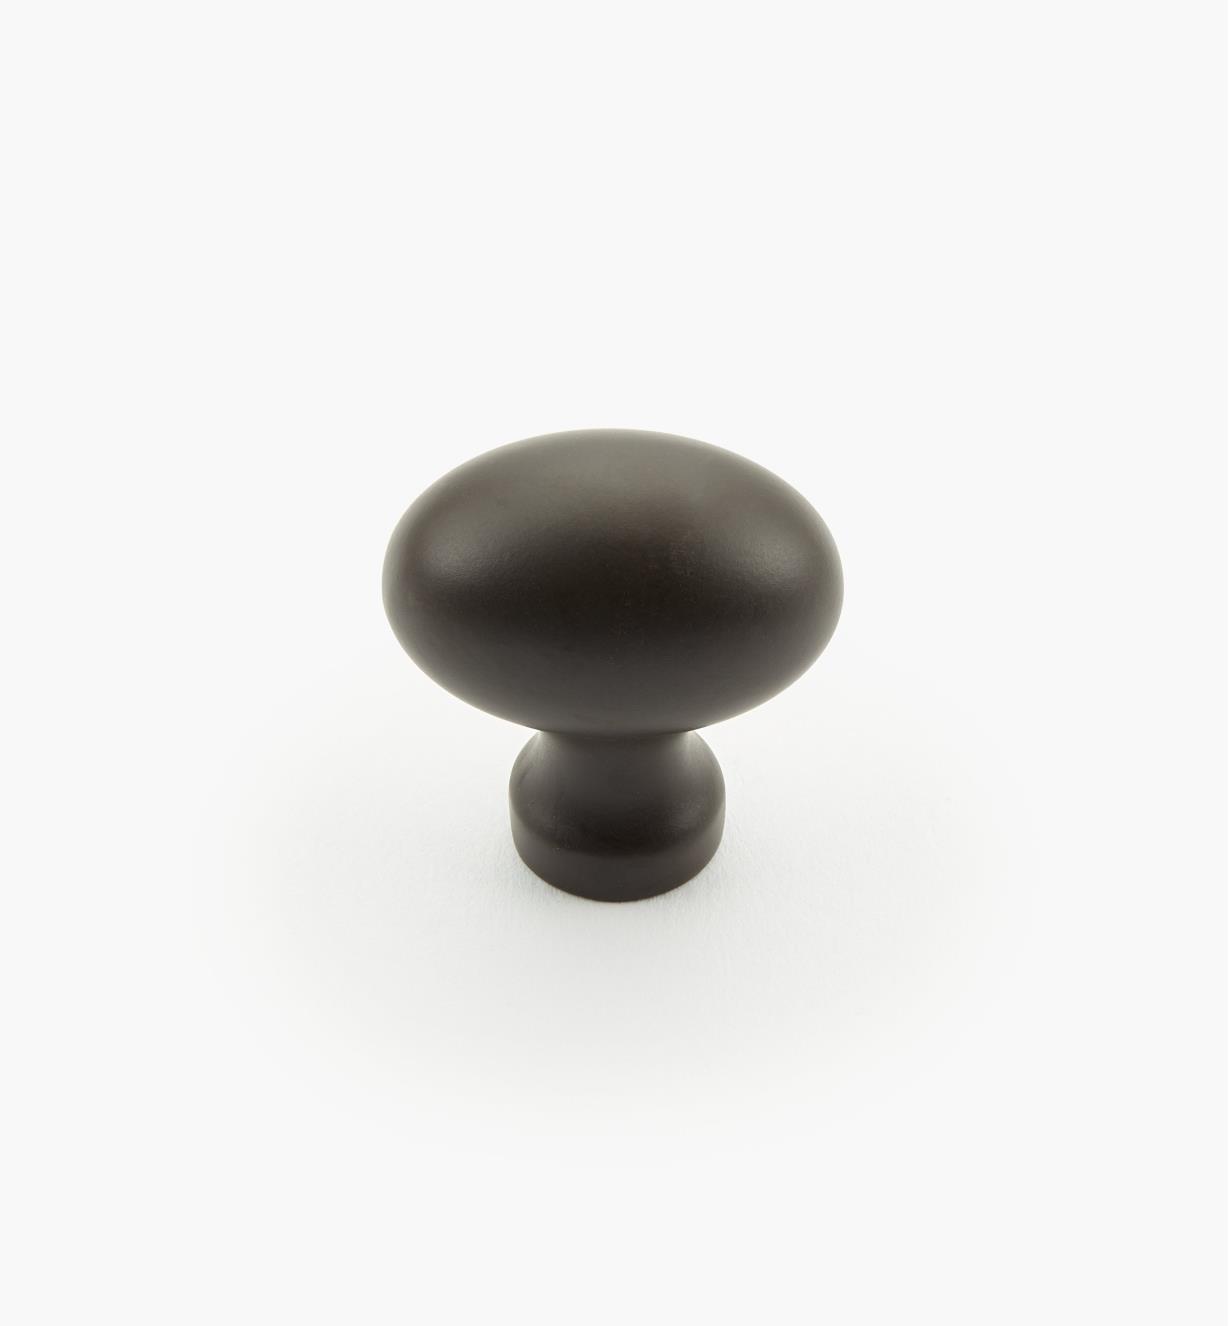 02W4141 - Oil-Rubbed Bronze Oval Knob